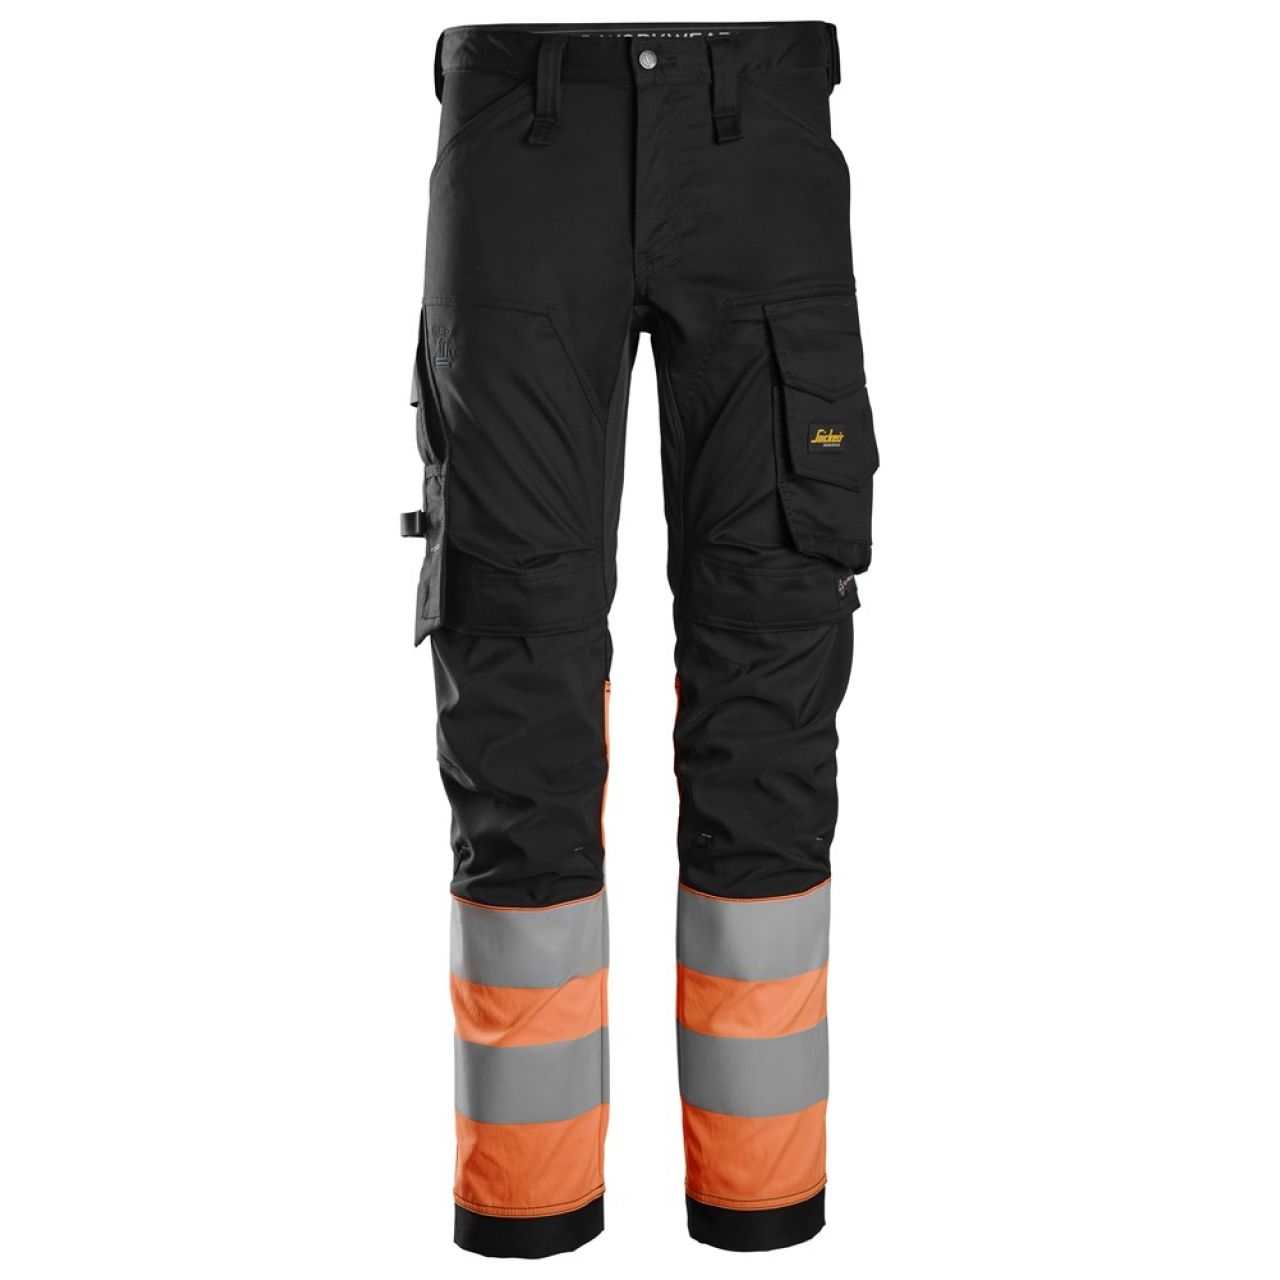 6334 Pantalones largos de trabajo elásticos de alta visibilidad clase 1 negro-naranja talla 152